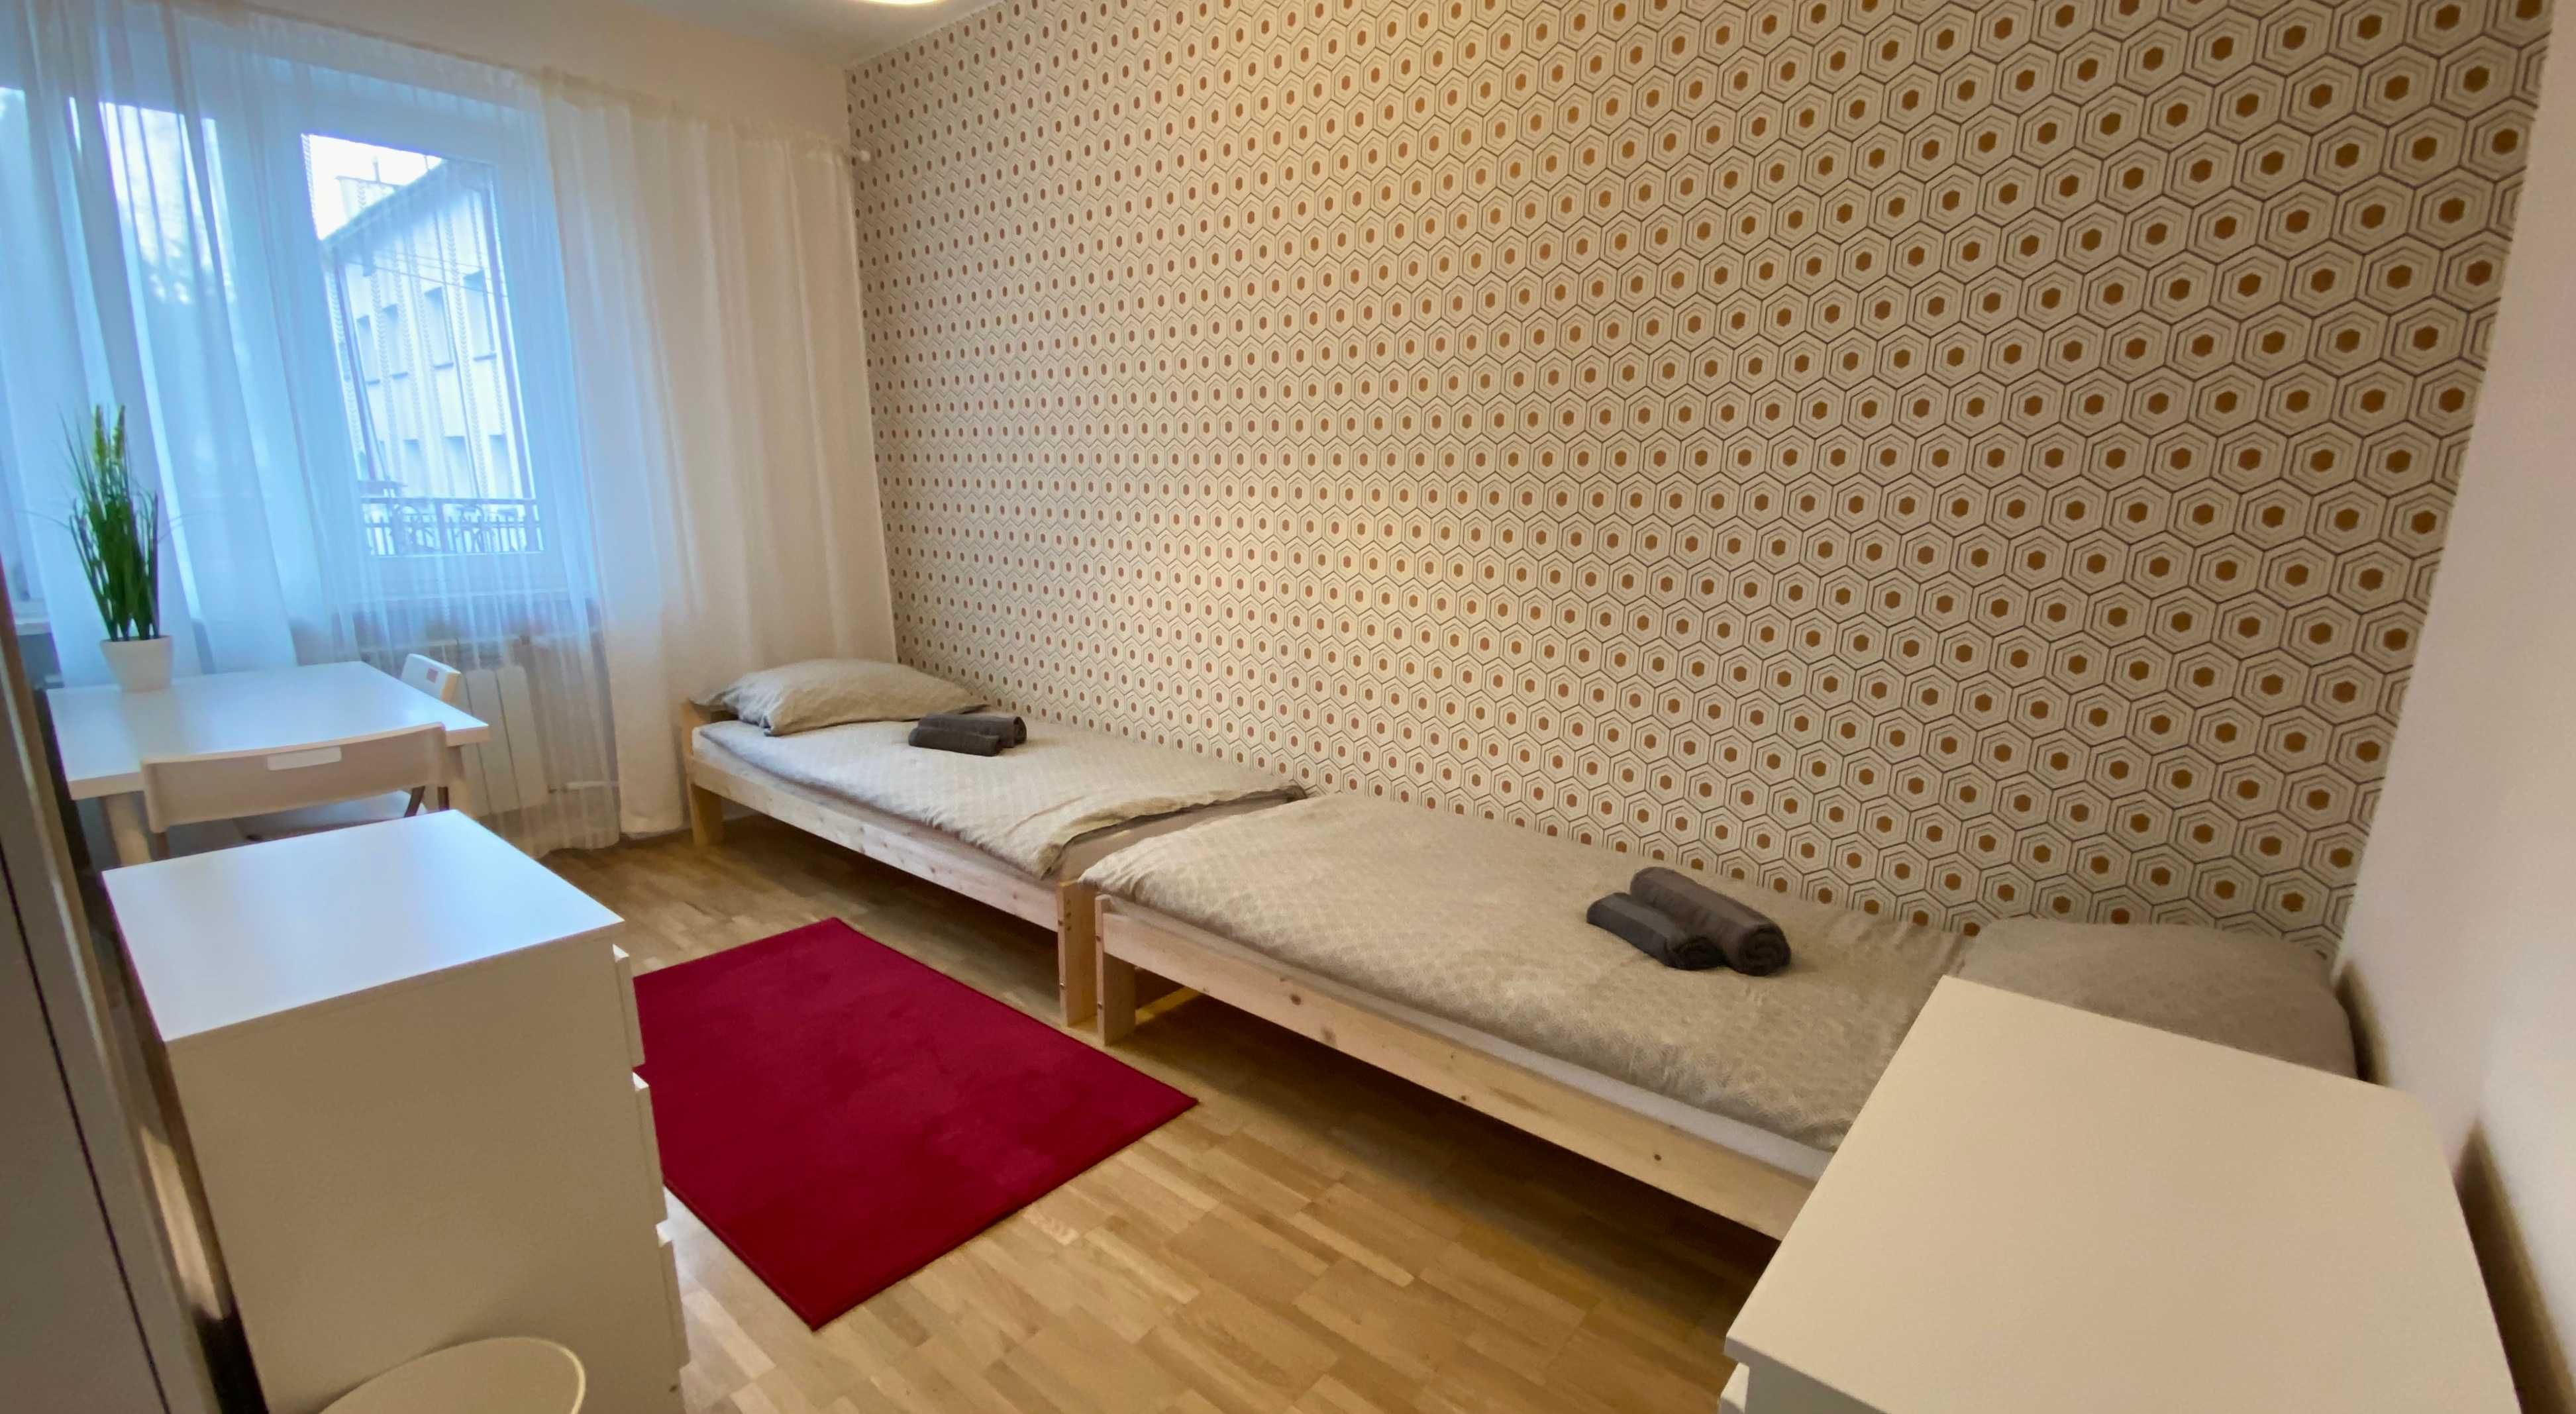 Nowy super pokój od zaraz w Piastowie